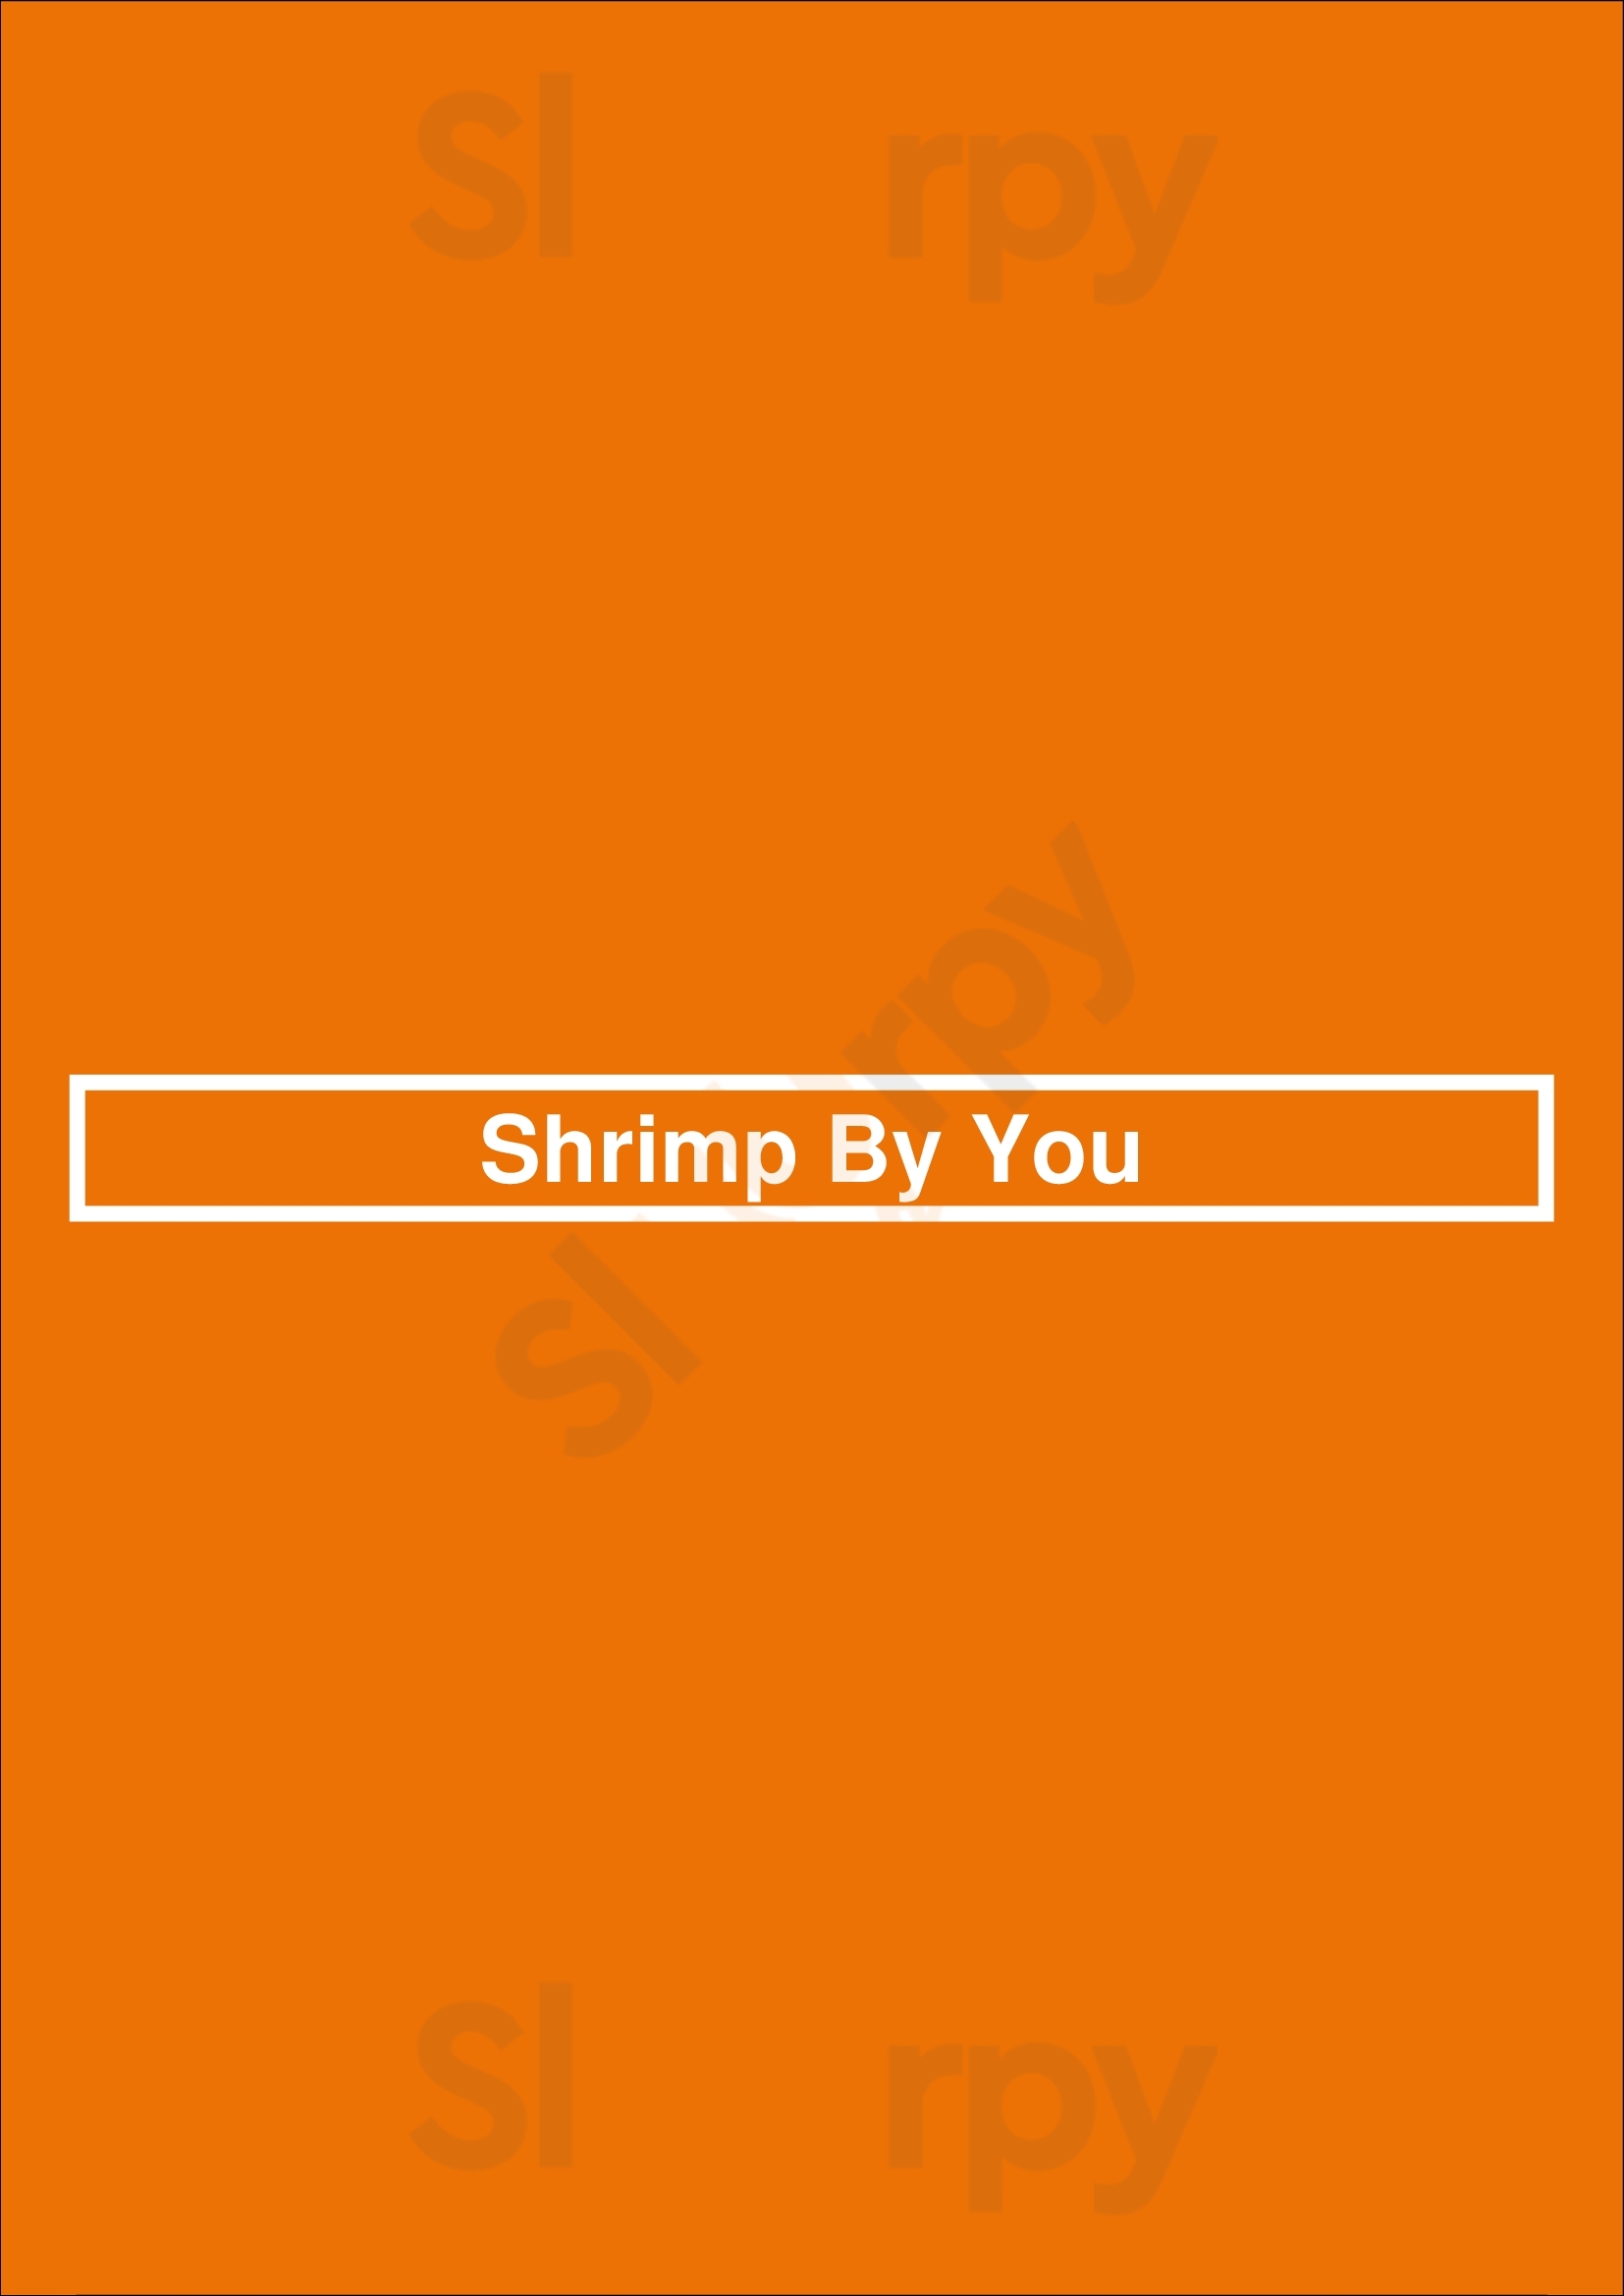 Shrimp By You Torrance Menu - 1